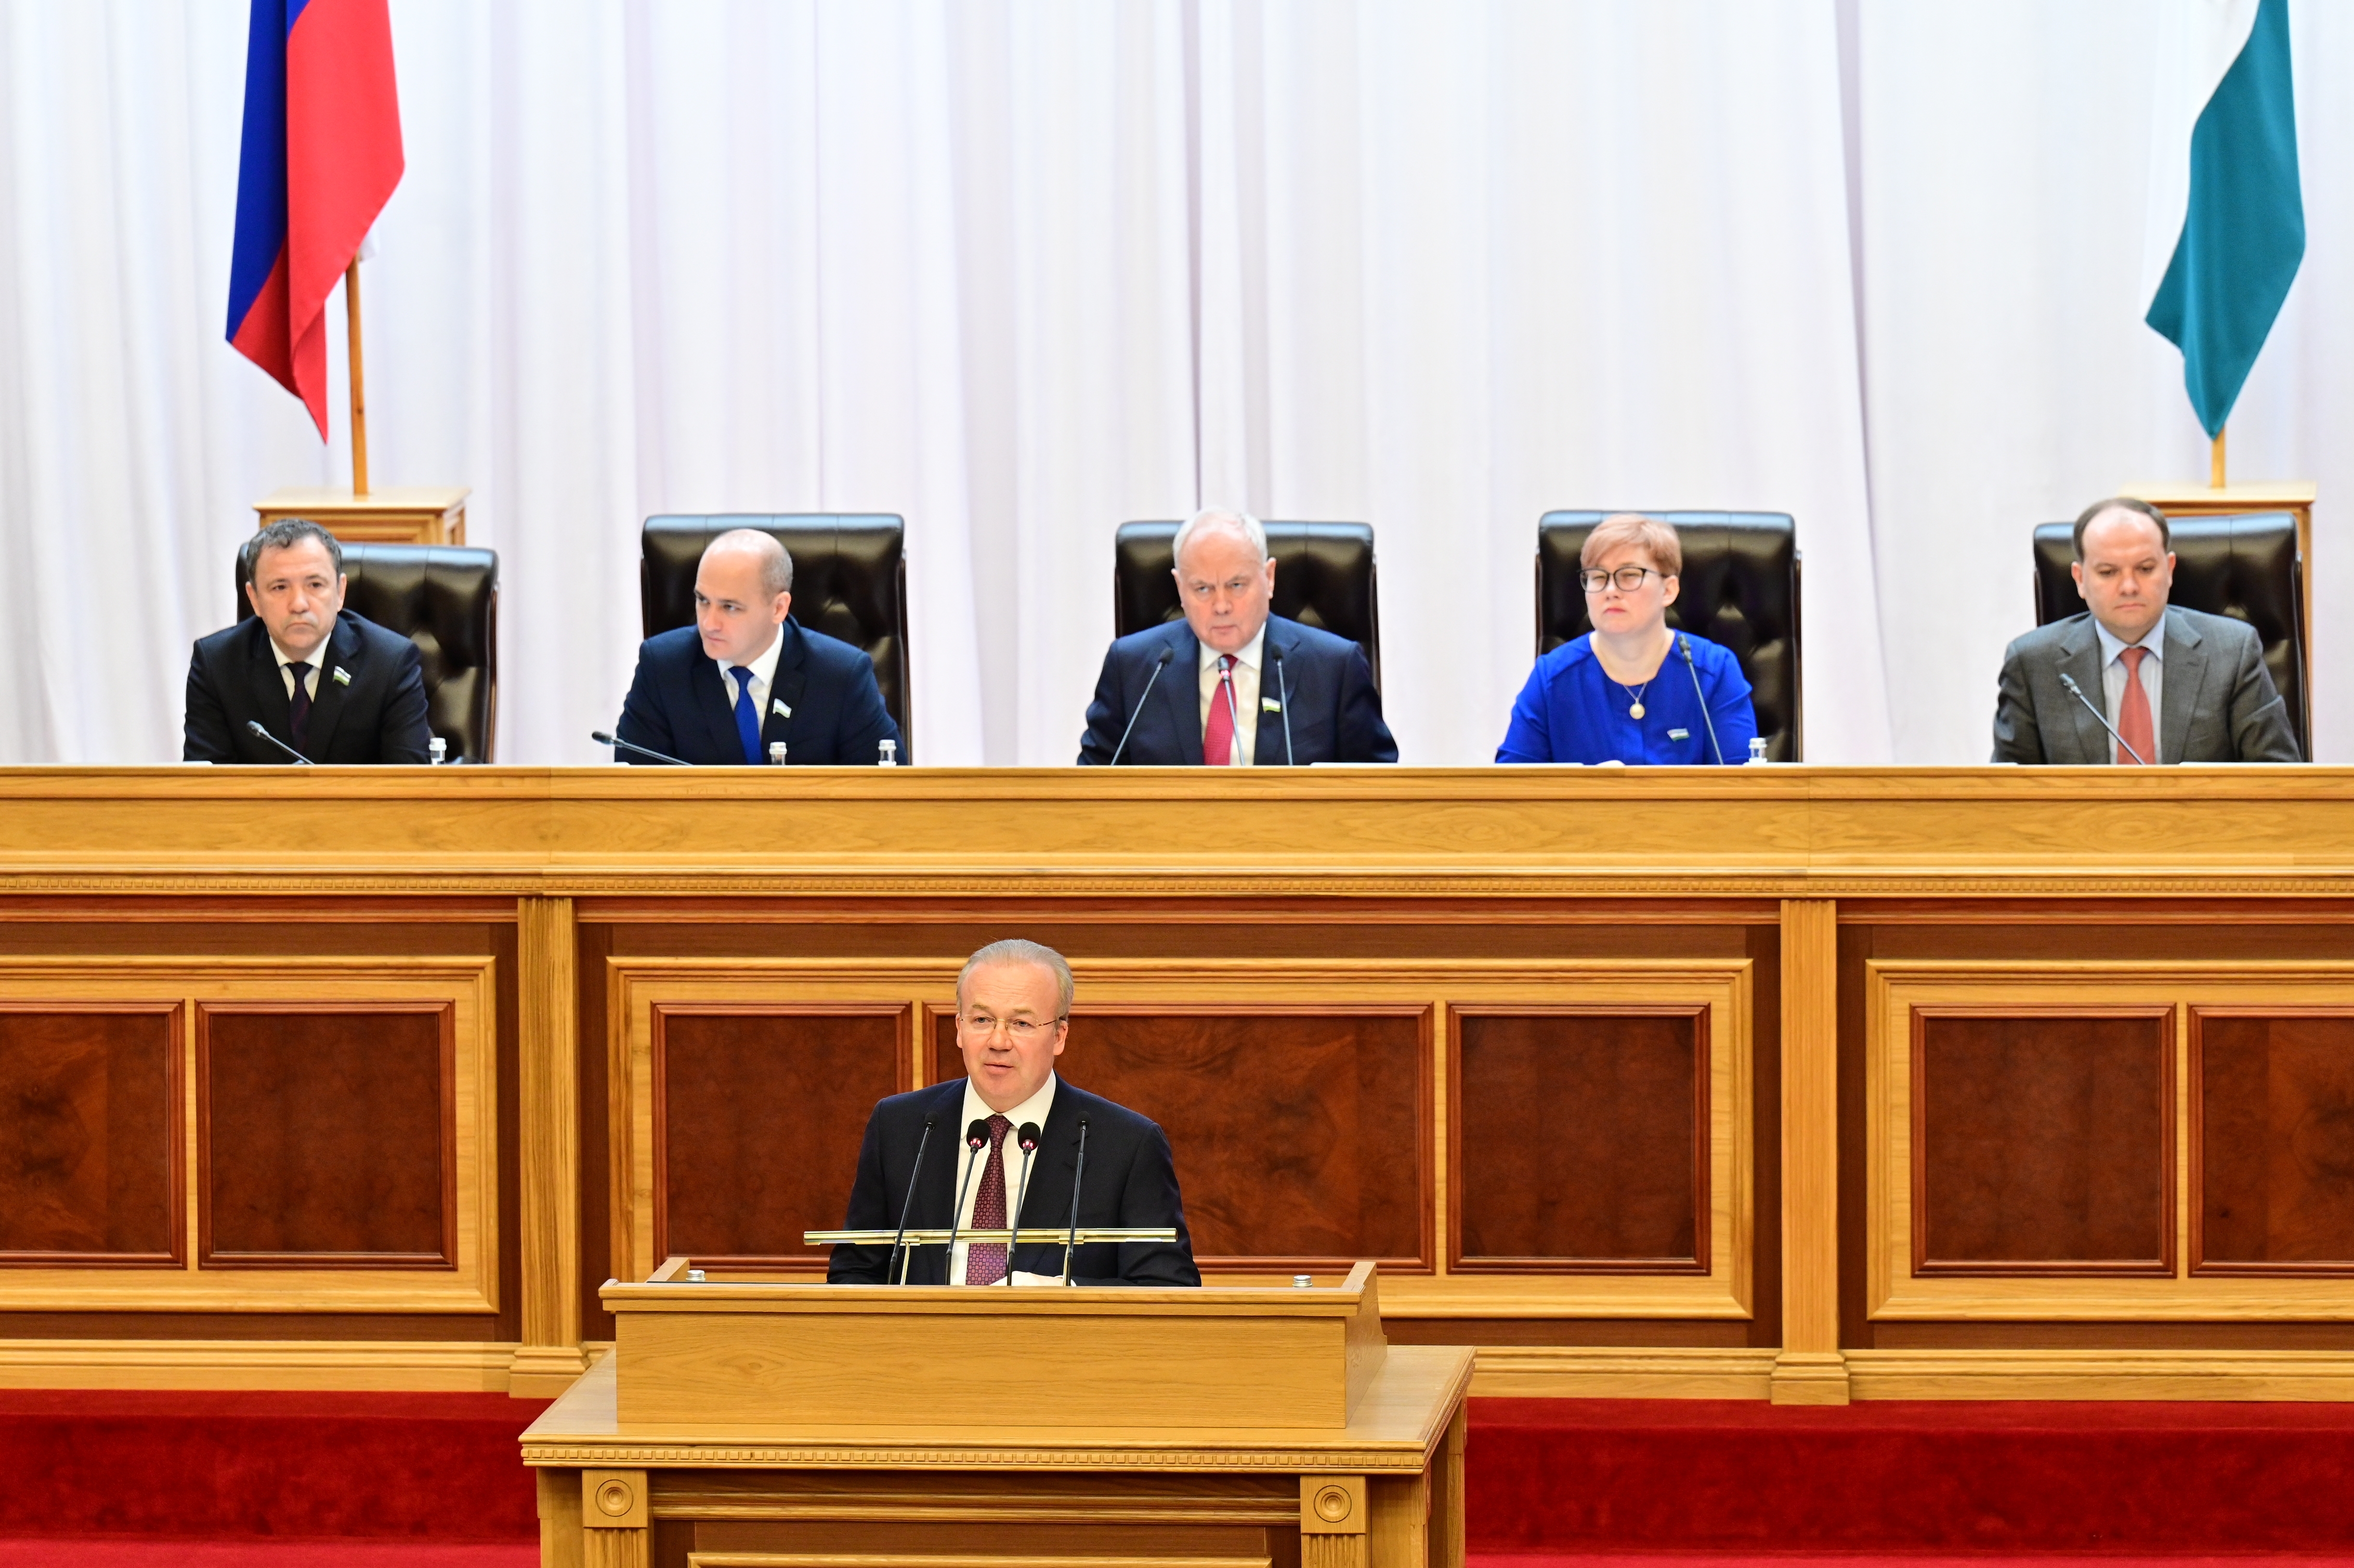 Отчет Правительства Республики Башкортостан в Государственном Собрании - Курултае Республики Башкортостан